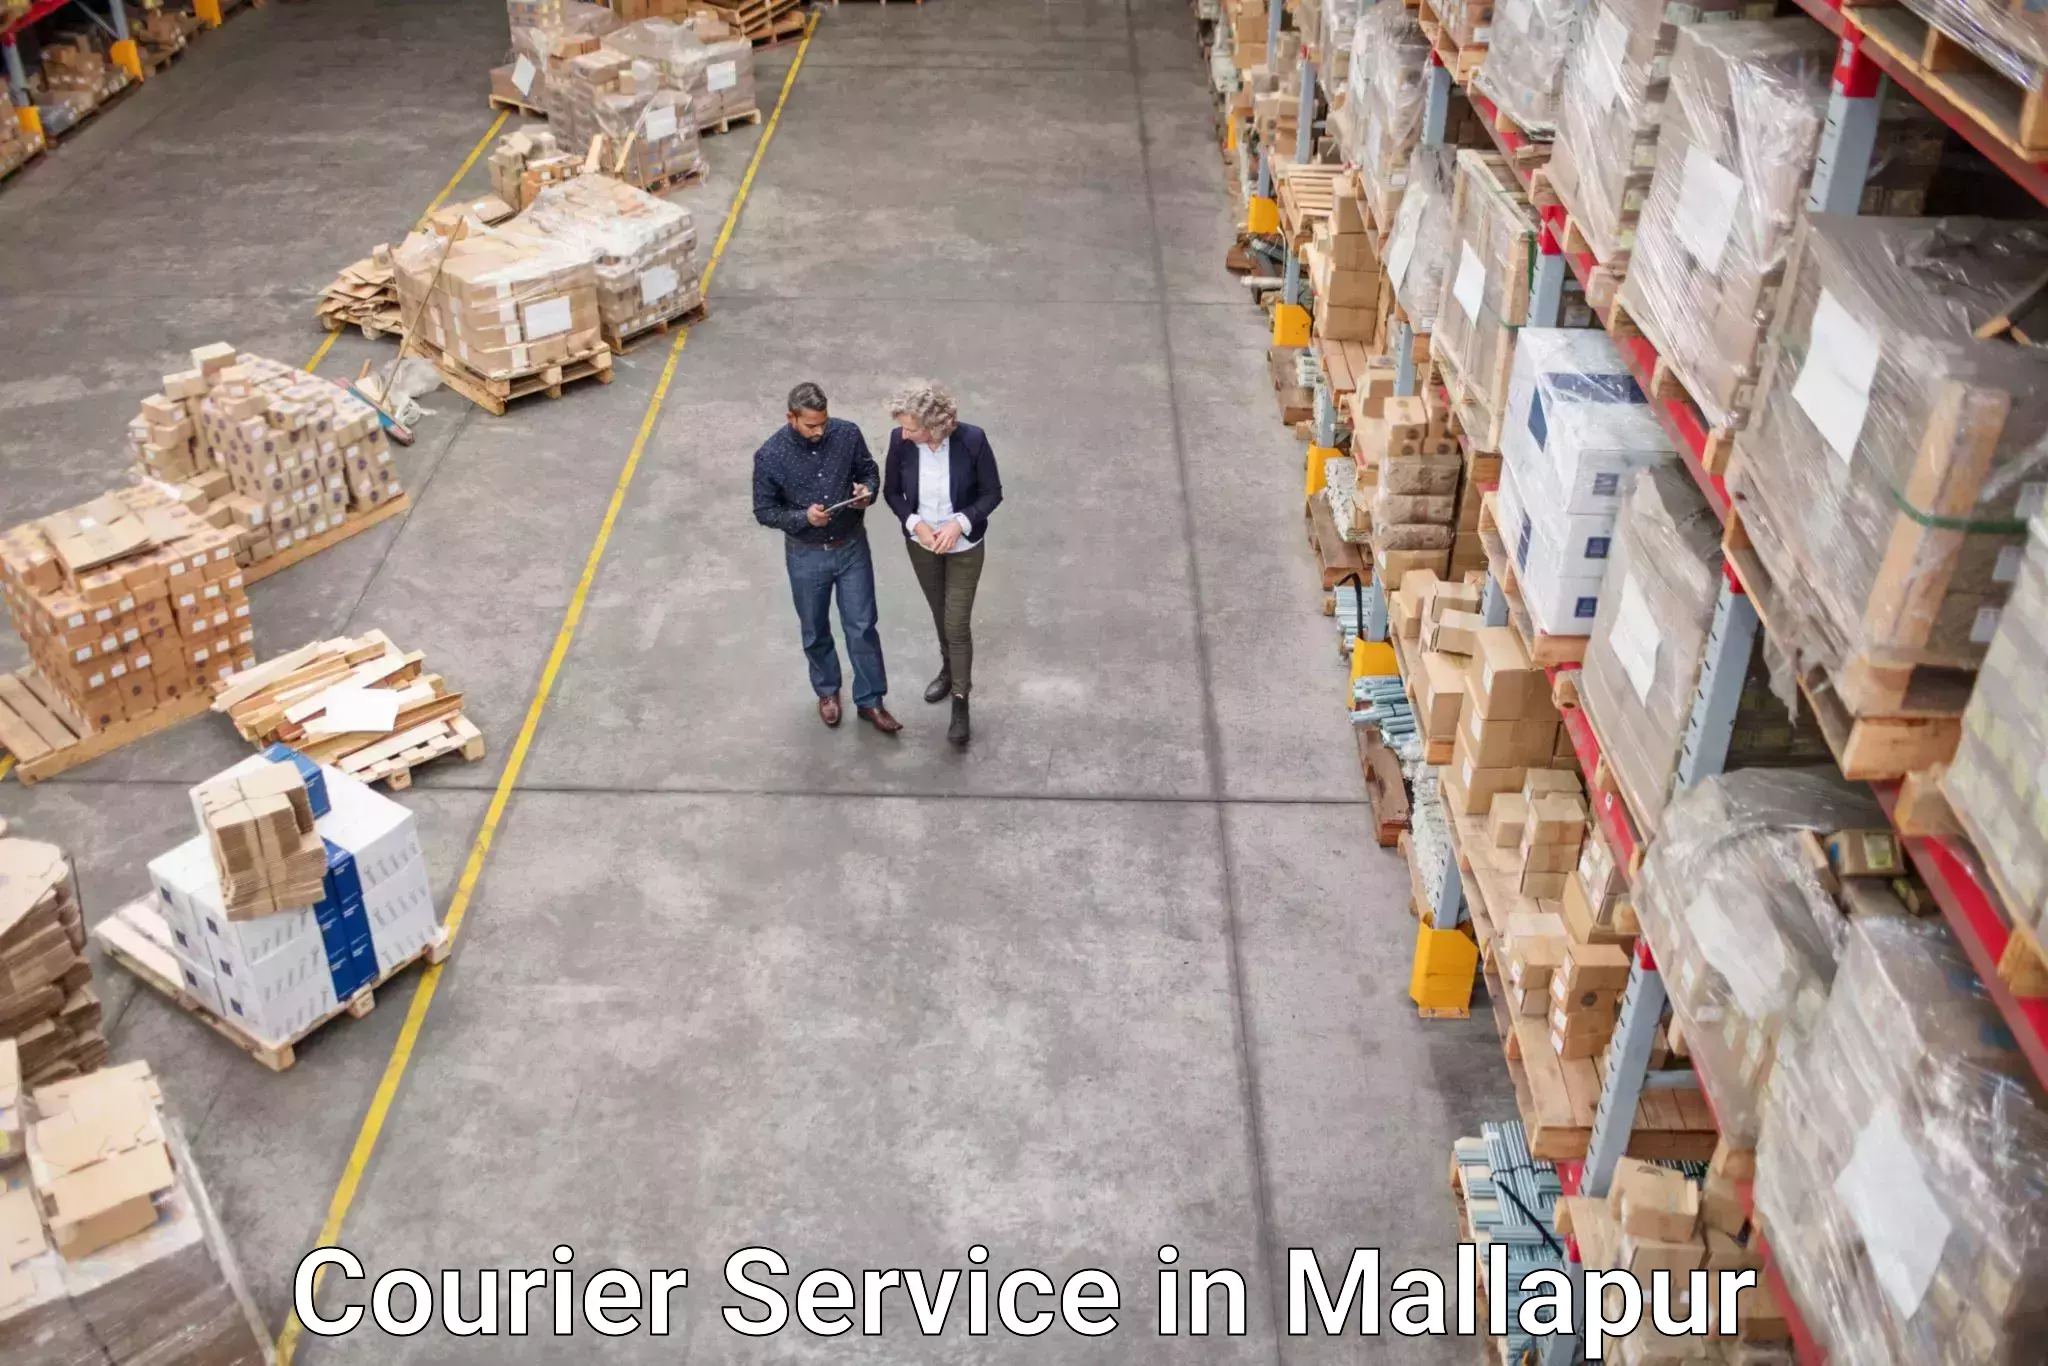 Quick parcel dispatch in Mallapur